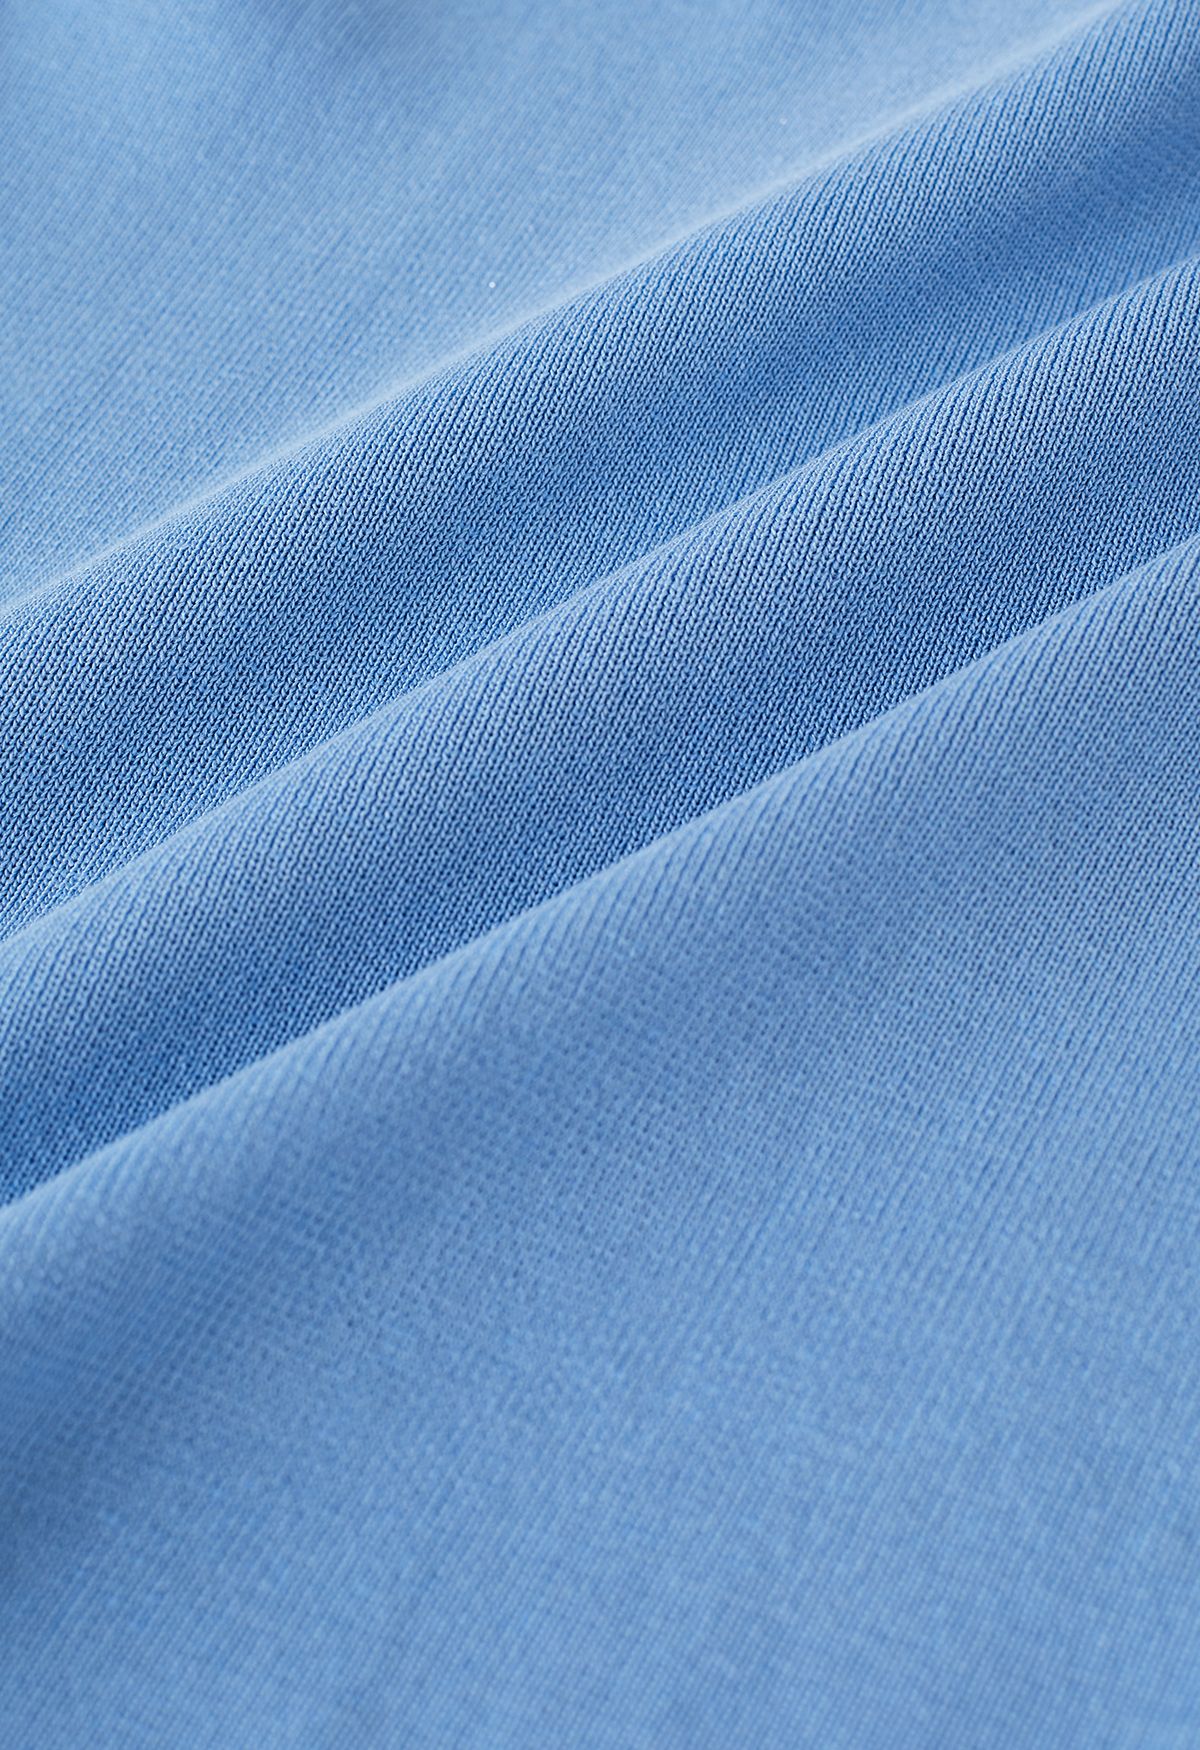 Camiseta sin mangas de punto con cuello cuadrado elegante en azul